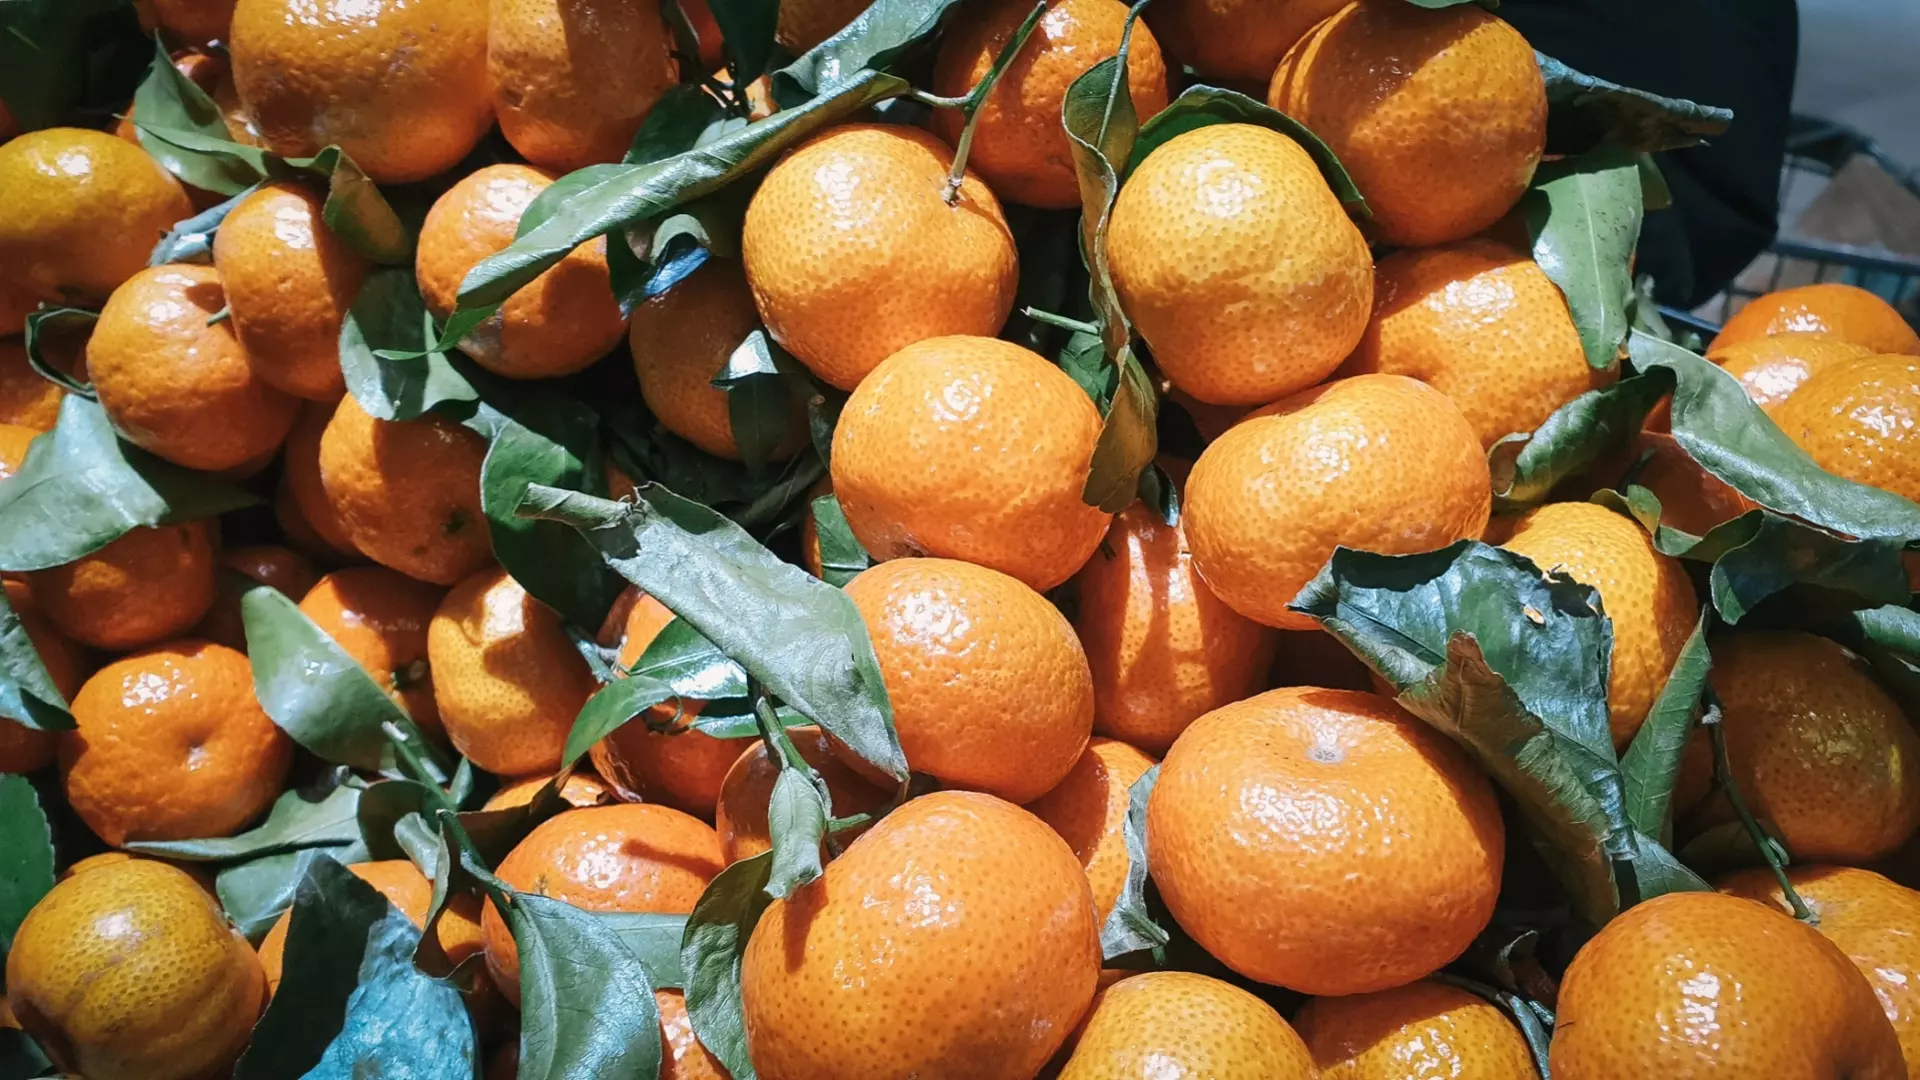 Цены на апельсины и мандарины в Тюмени взлетели до 300 рублей